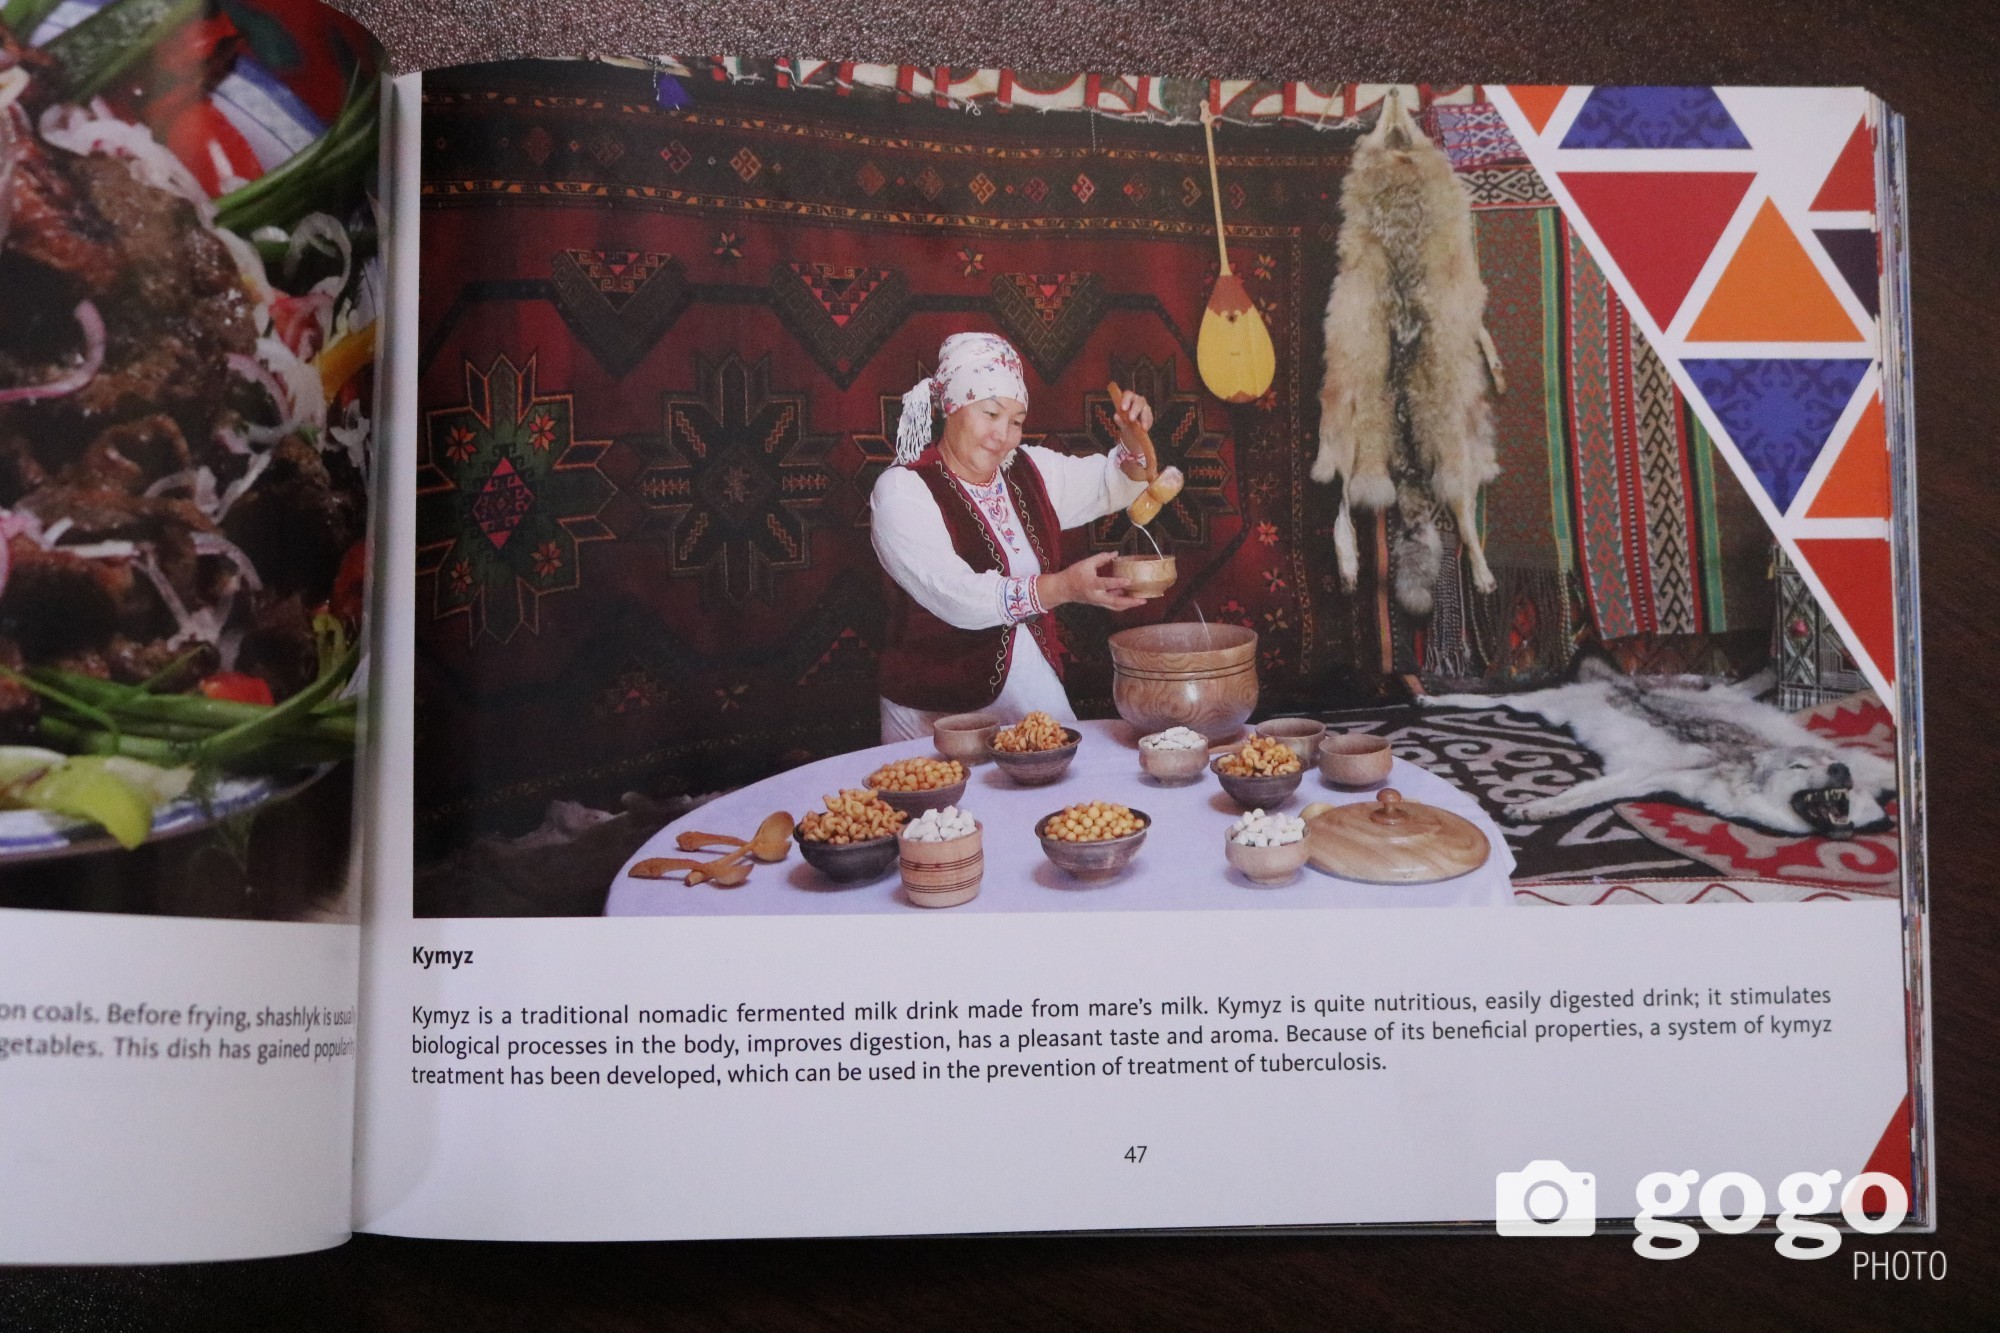 Түүний зураг Алматы хотын жуулчдад зориулсан танилцуулга номд багтжээ